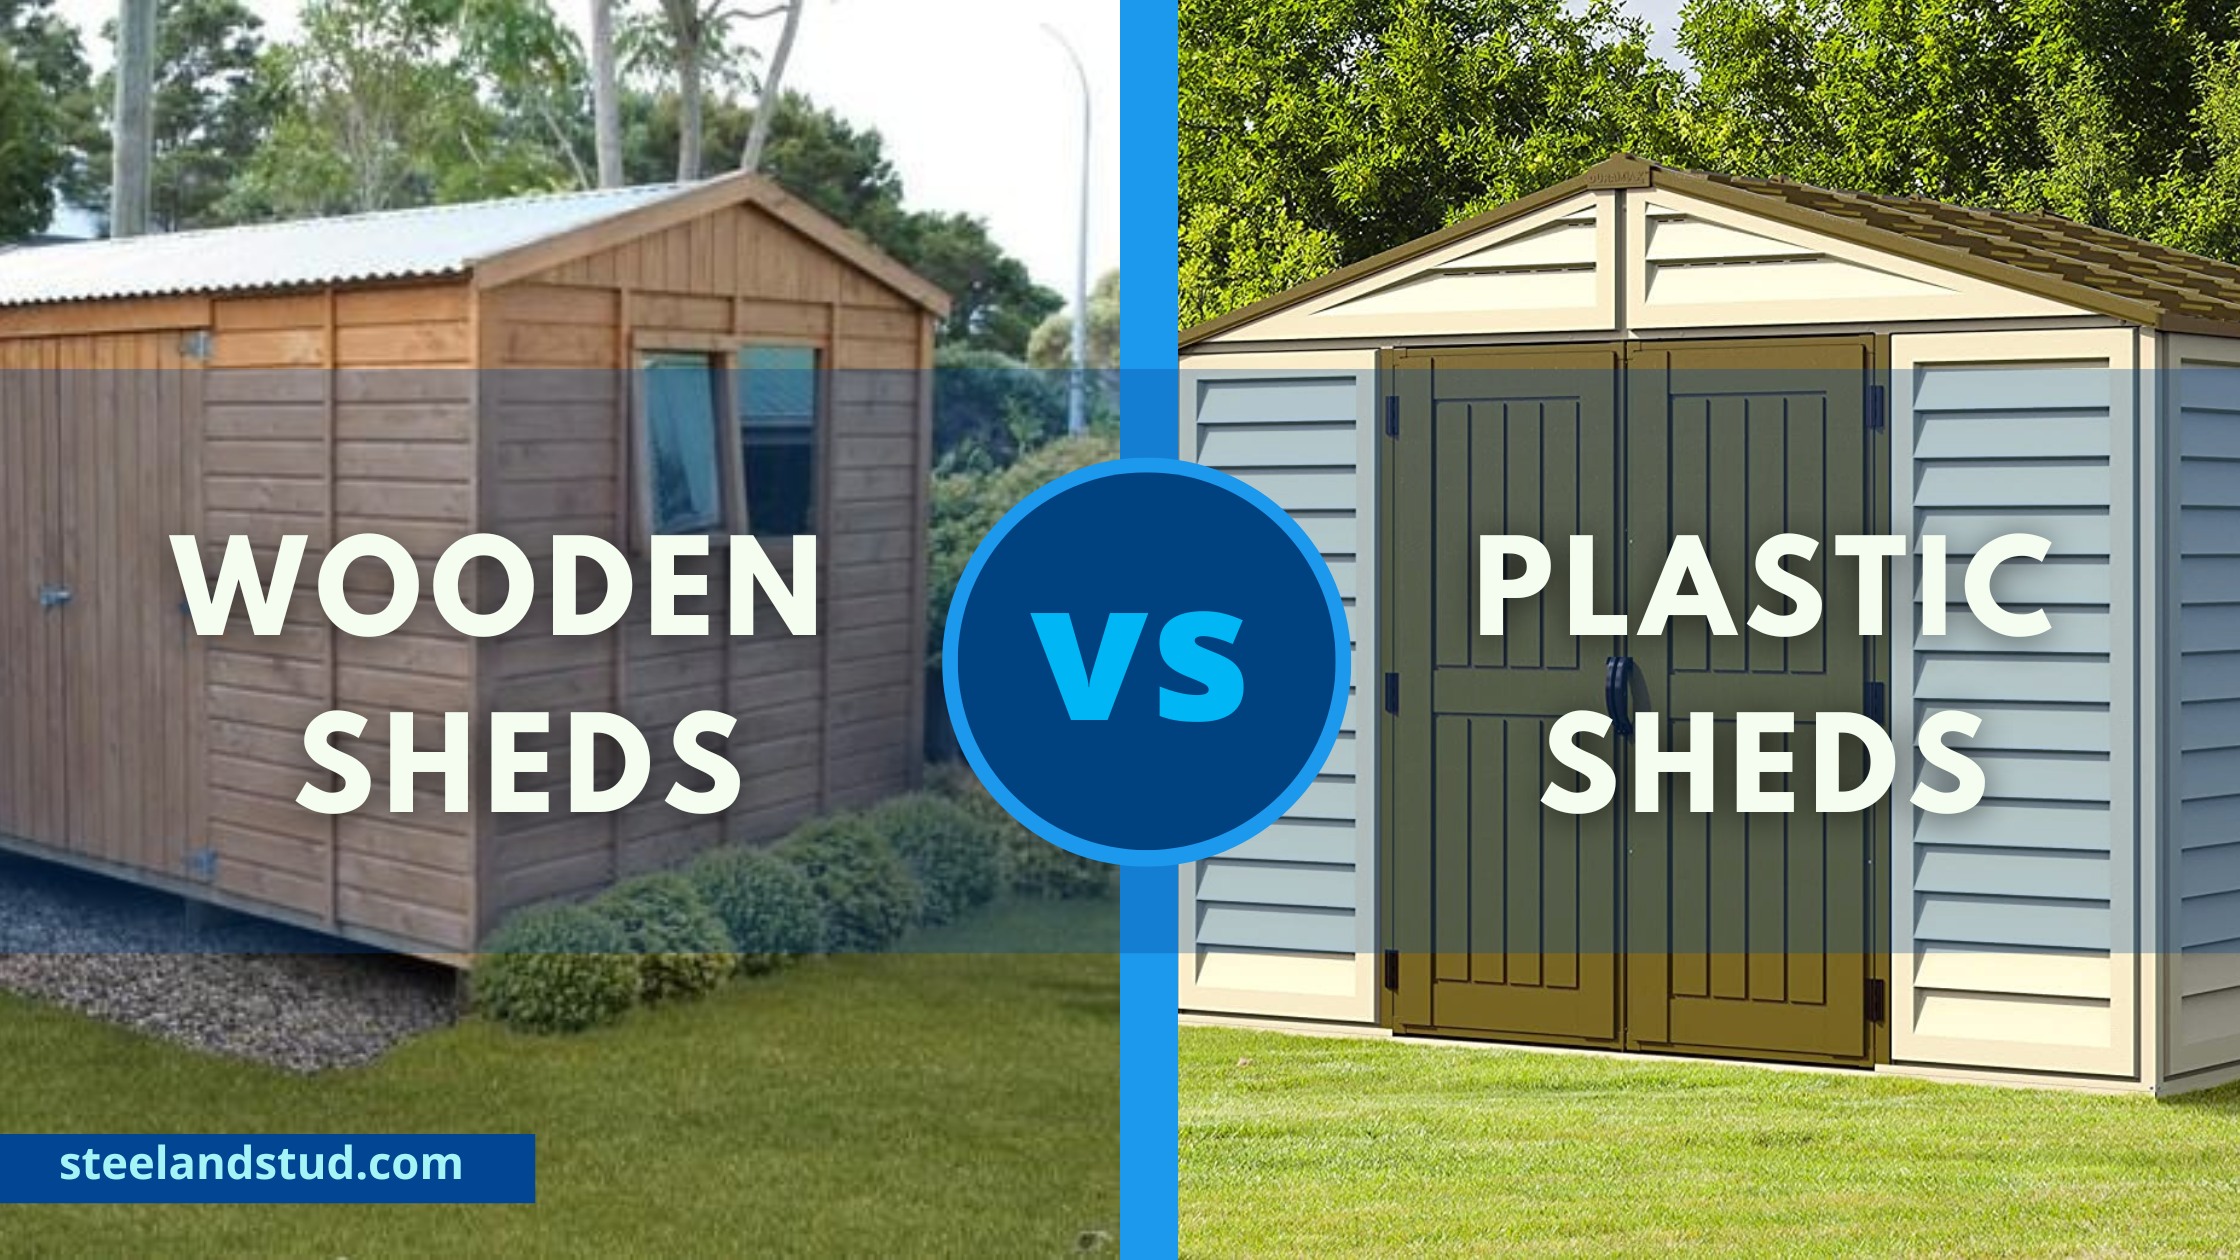 Wooden sheds vs plastic sheds